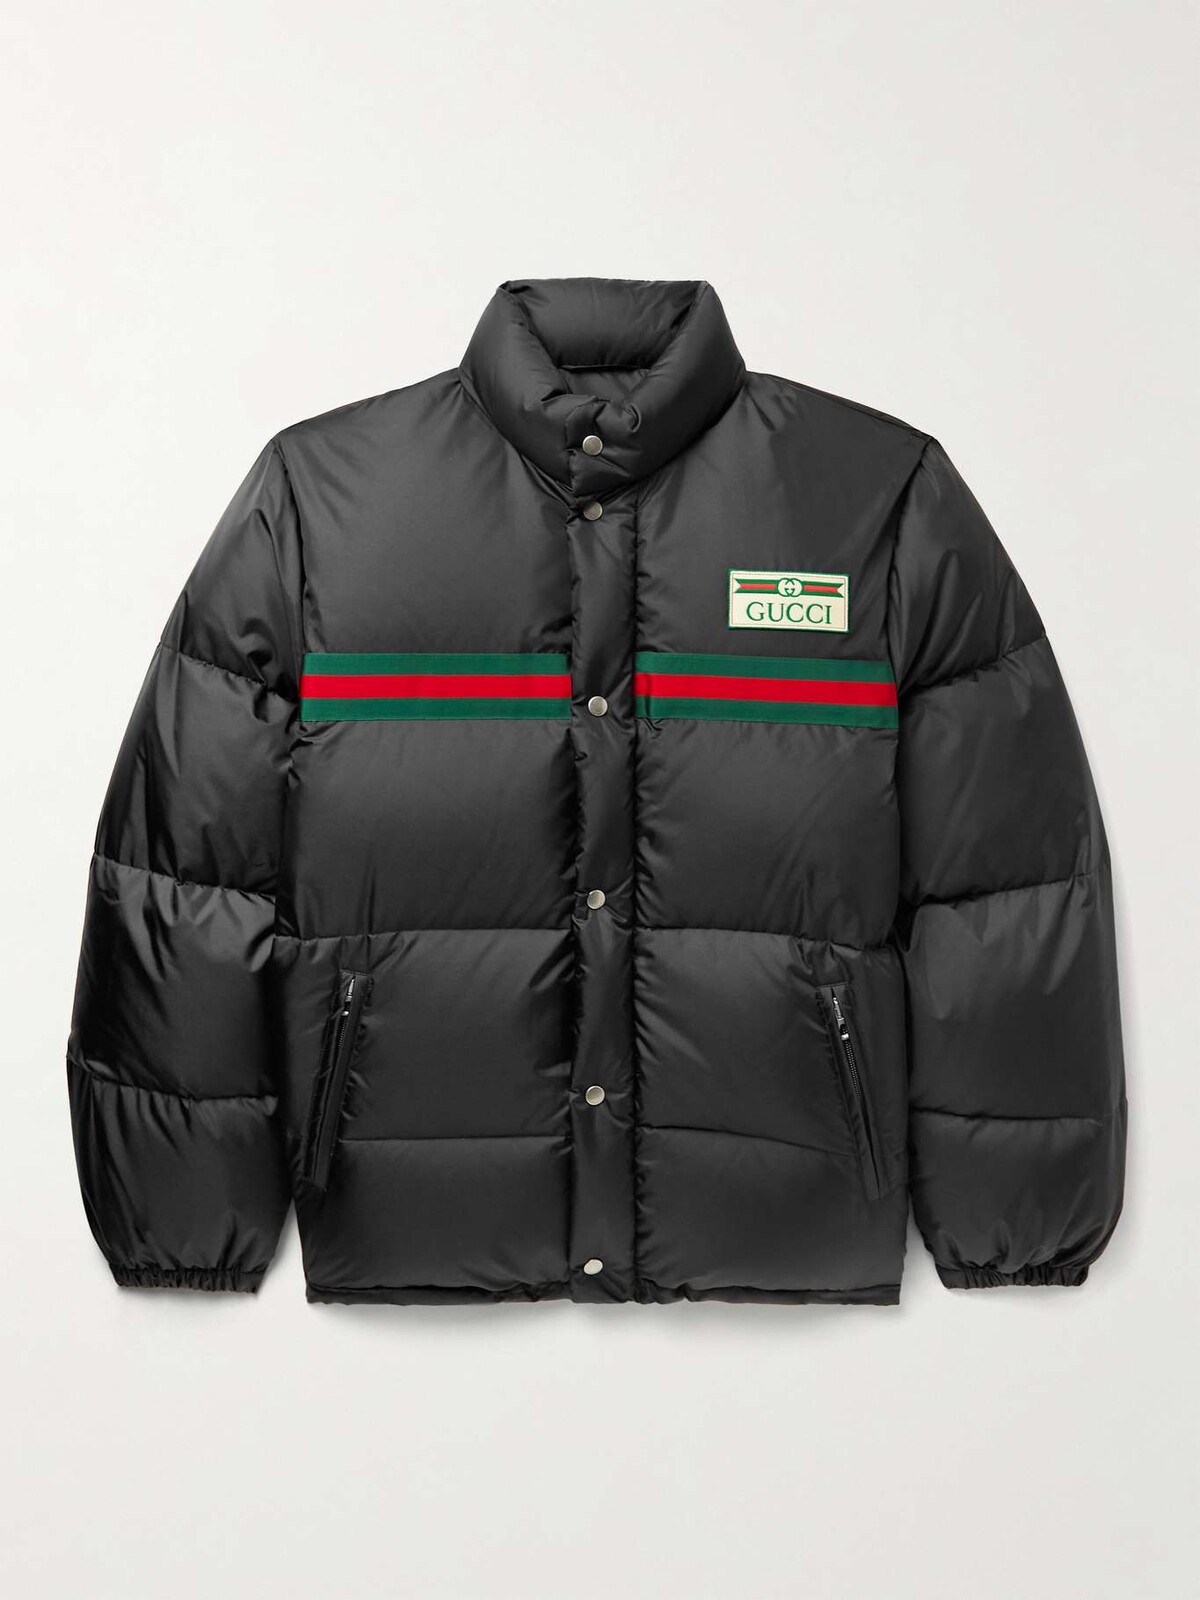 Čierna páperová bunda s logom módneho domu Gucci. Cena je 2 100 eur cez obchod MR PORTER.